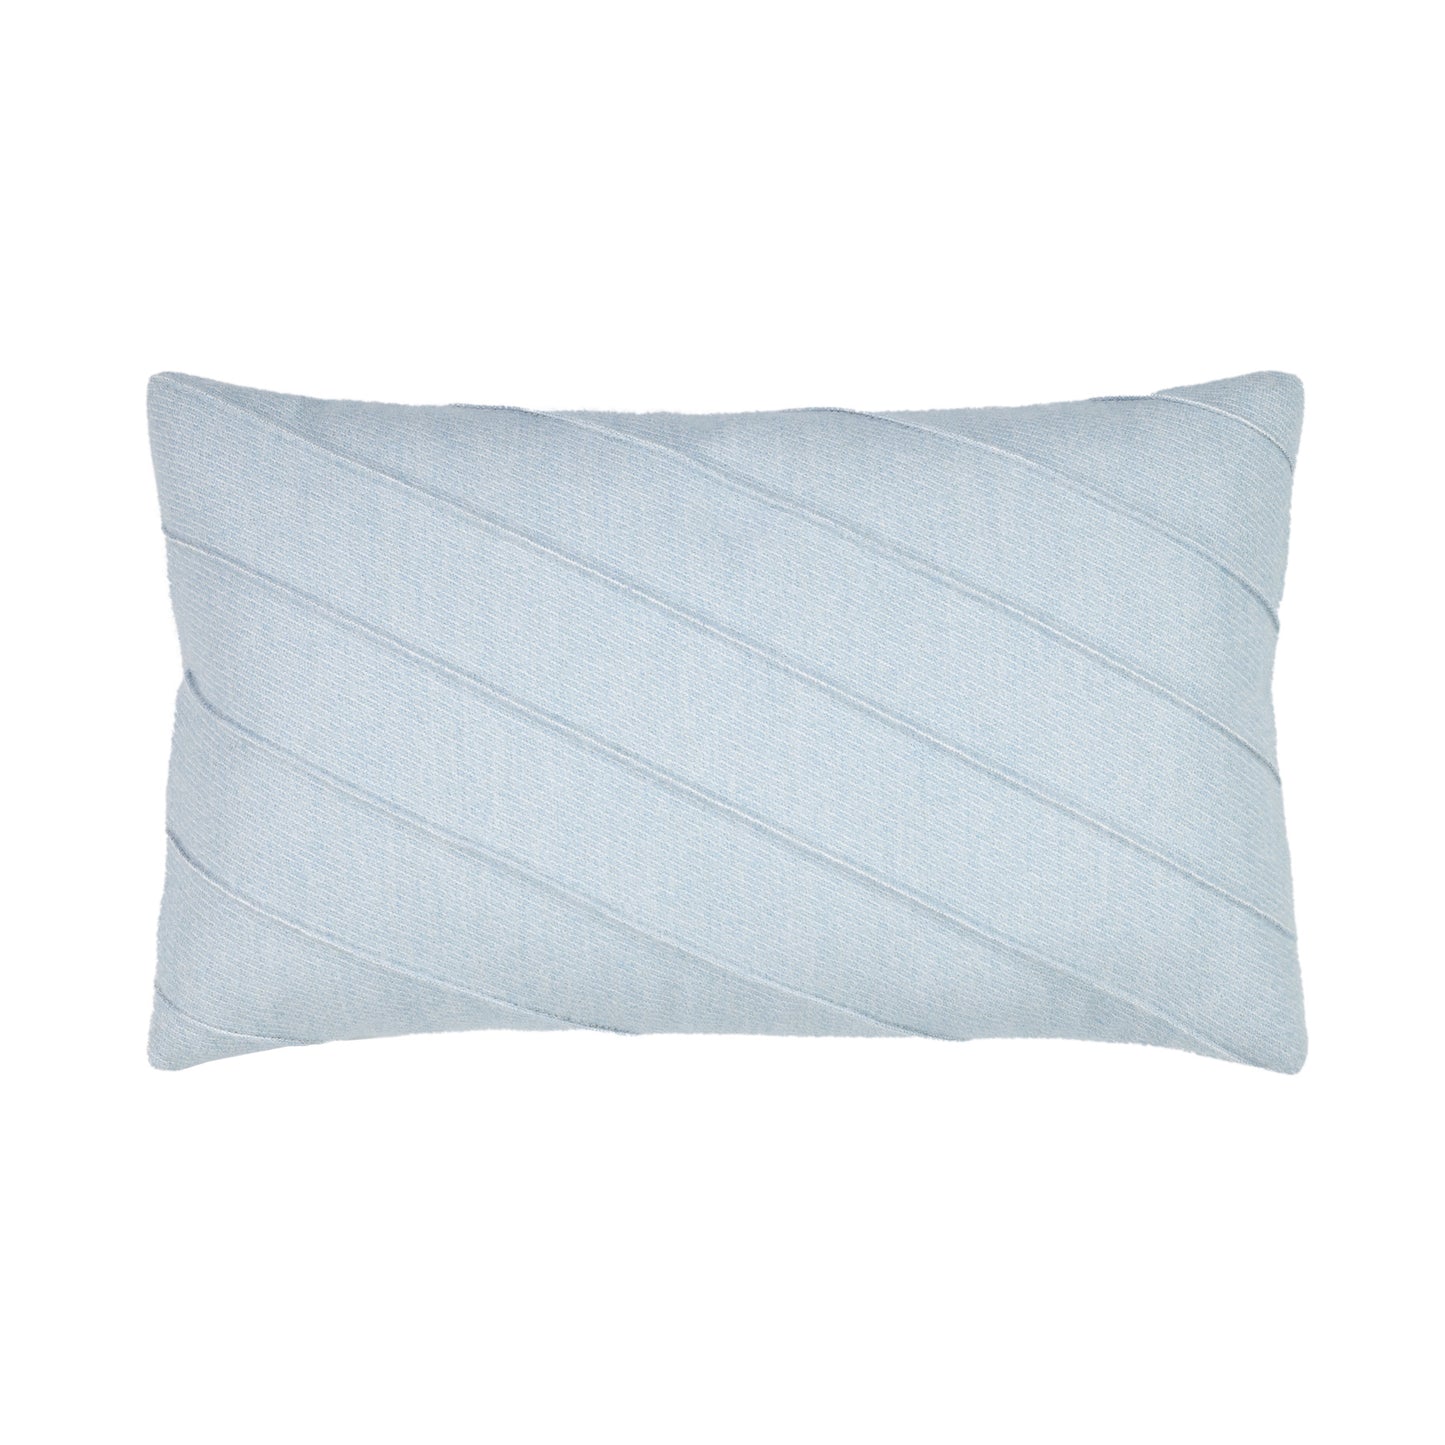 Elaine Smith Uplift Dew Lumbar Pillow, image 1